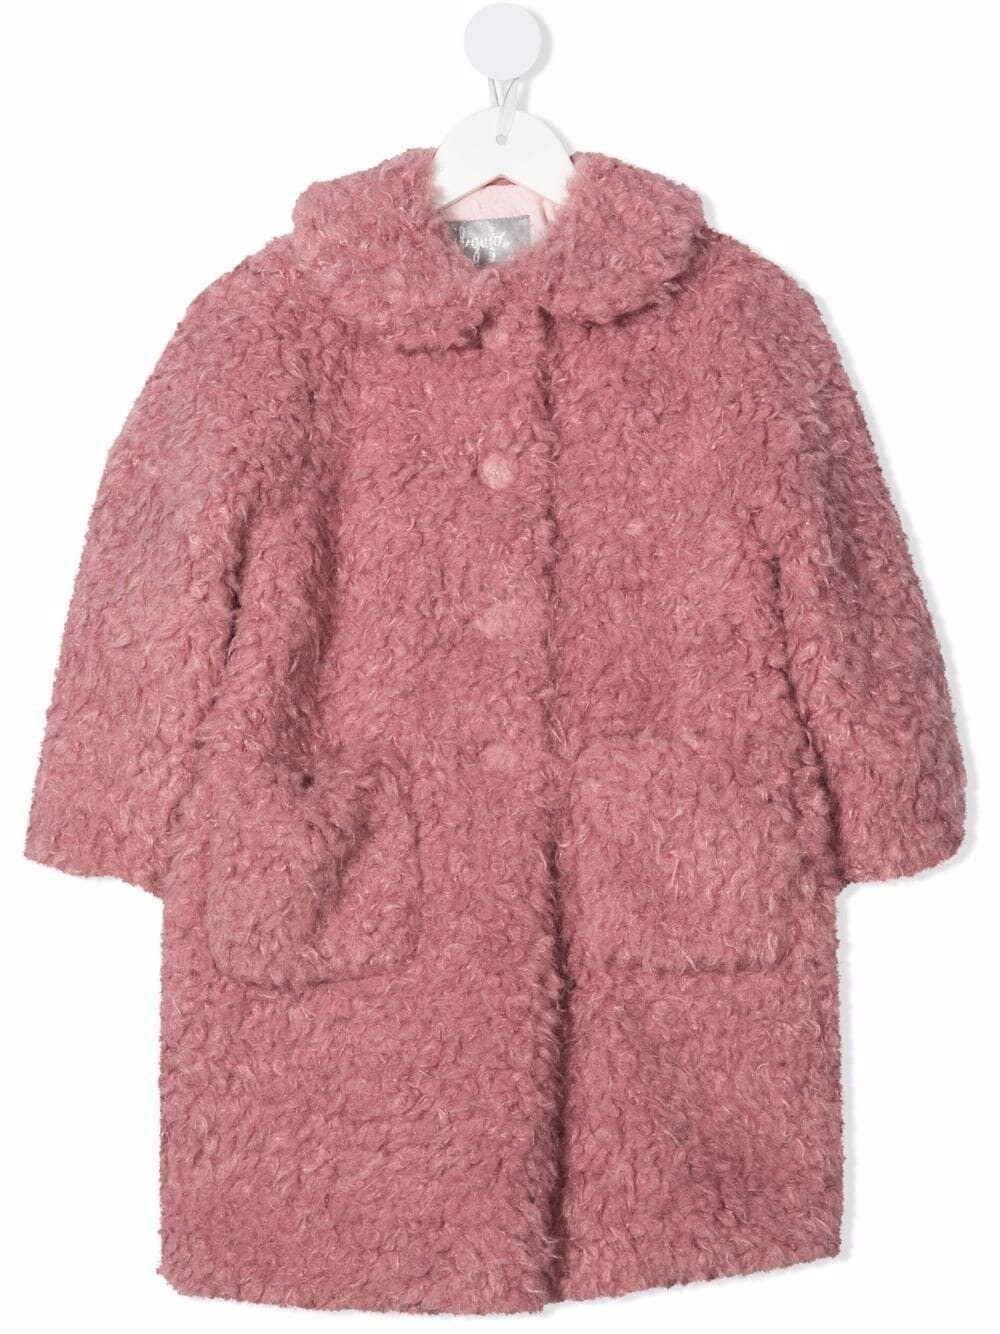 Il Gufo - Cappotto in bouclé rosa, Size: 6 anni